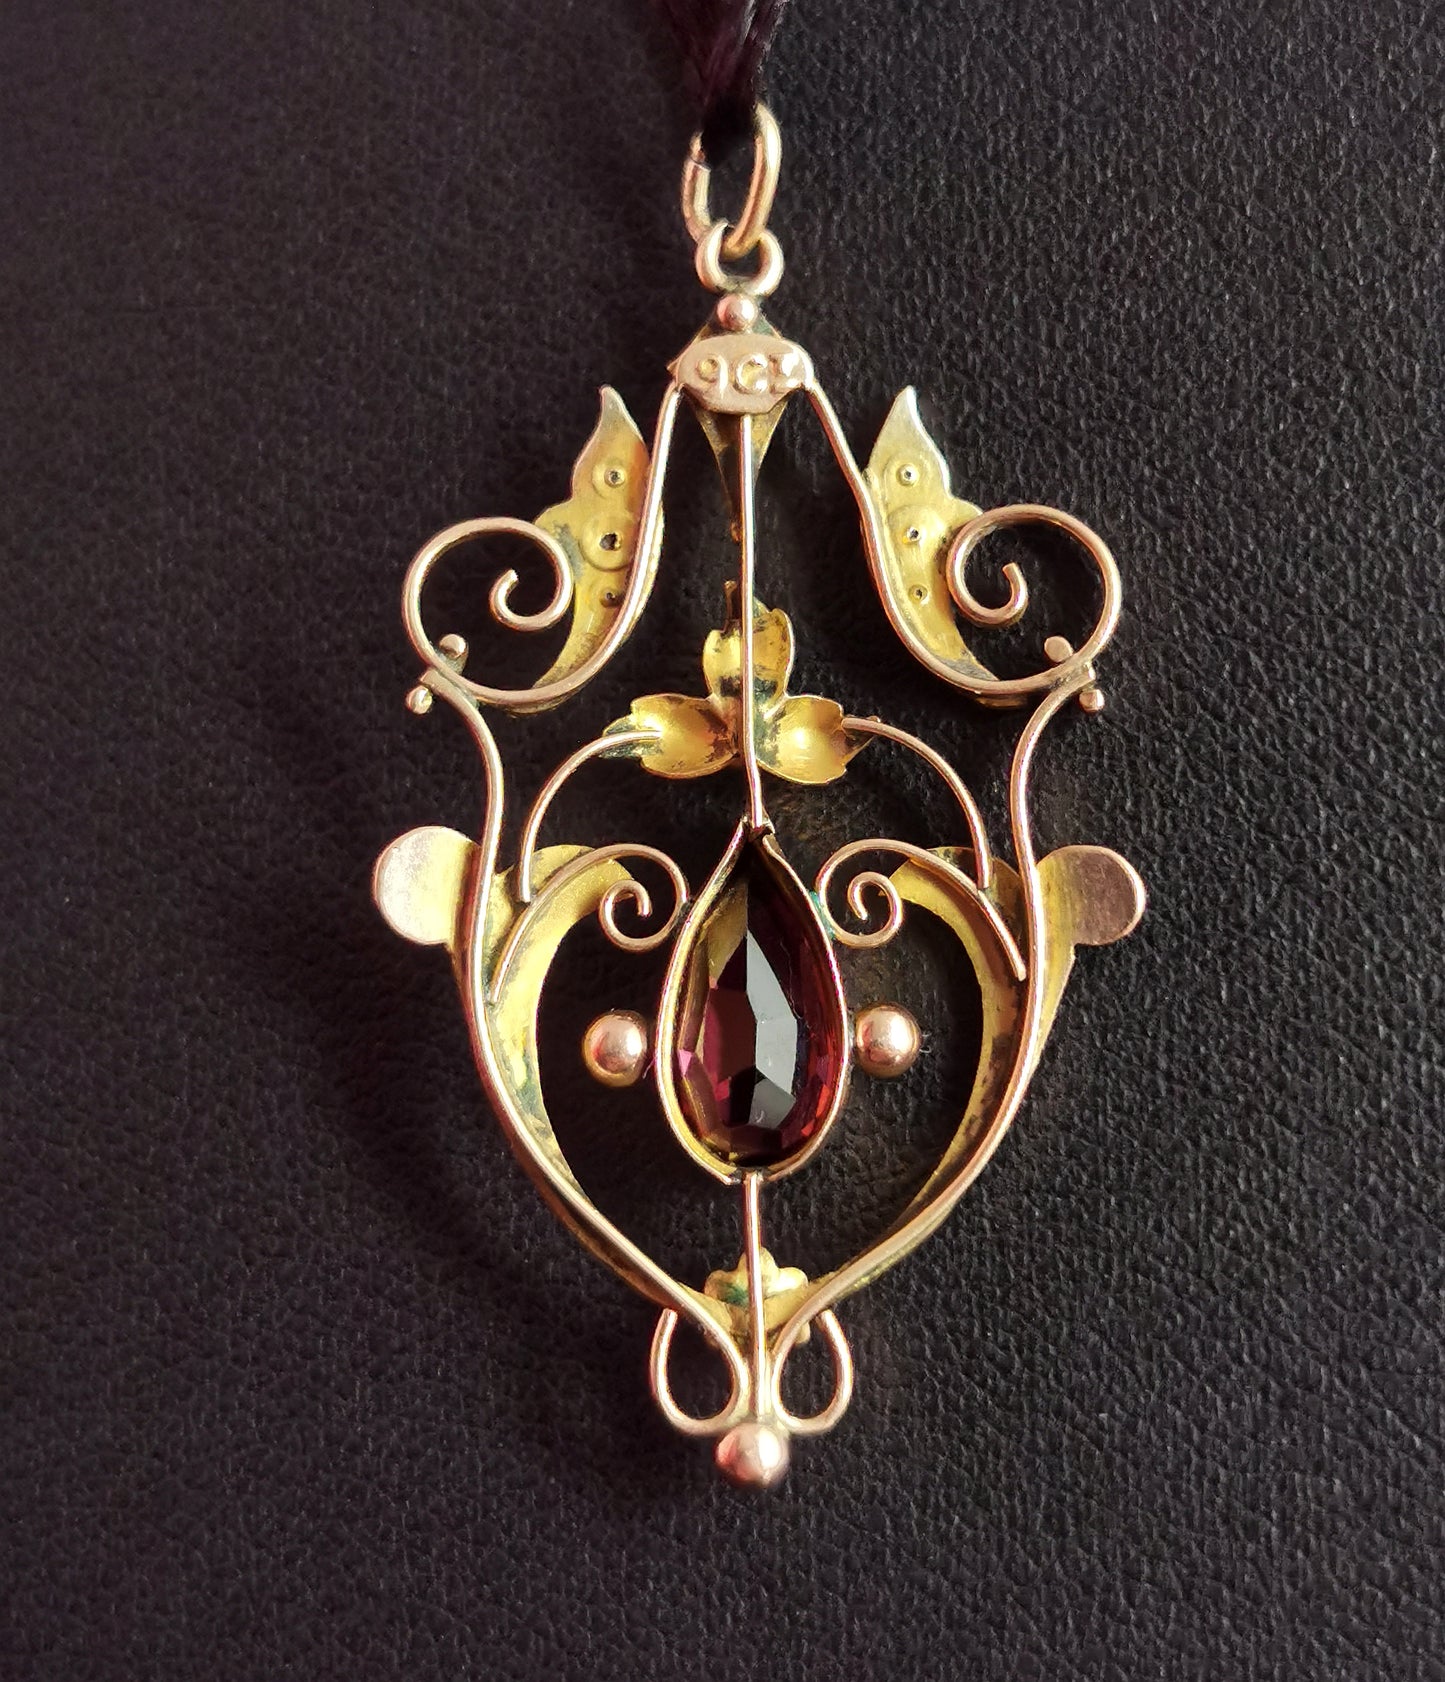 Antique Art Nouveau pendant, 9ct gold, garnet and pearl